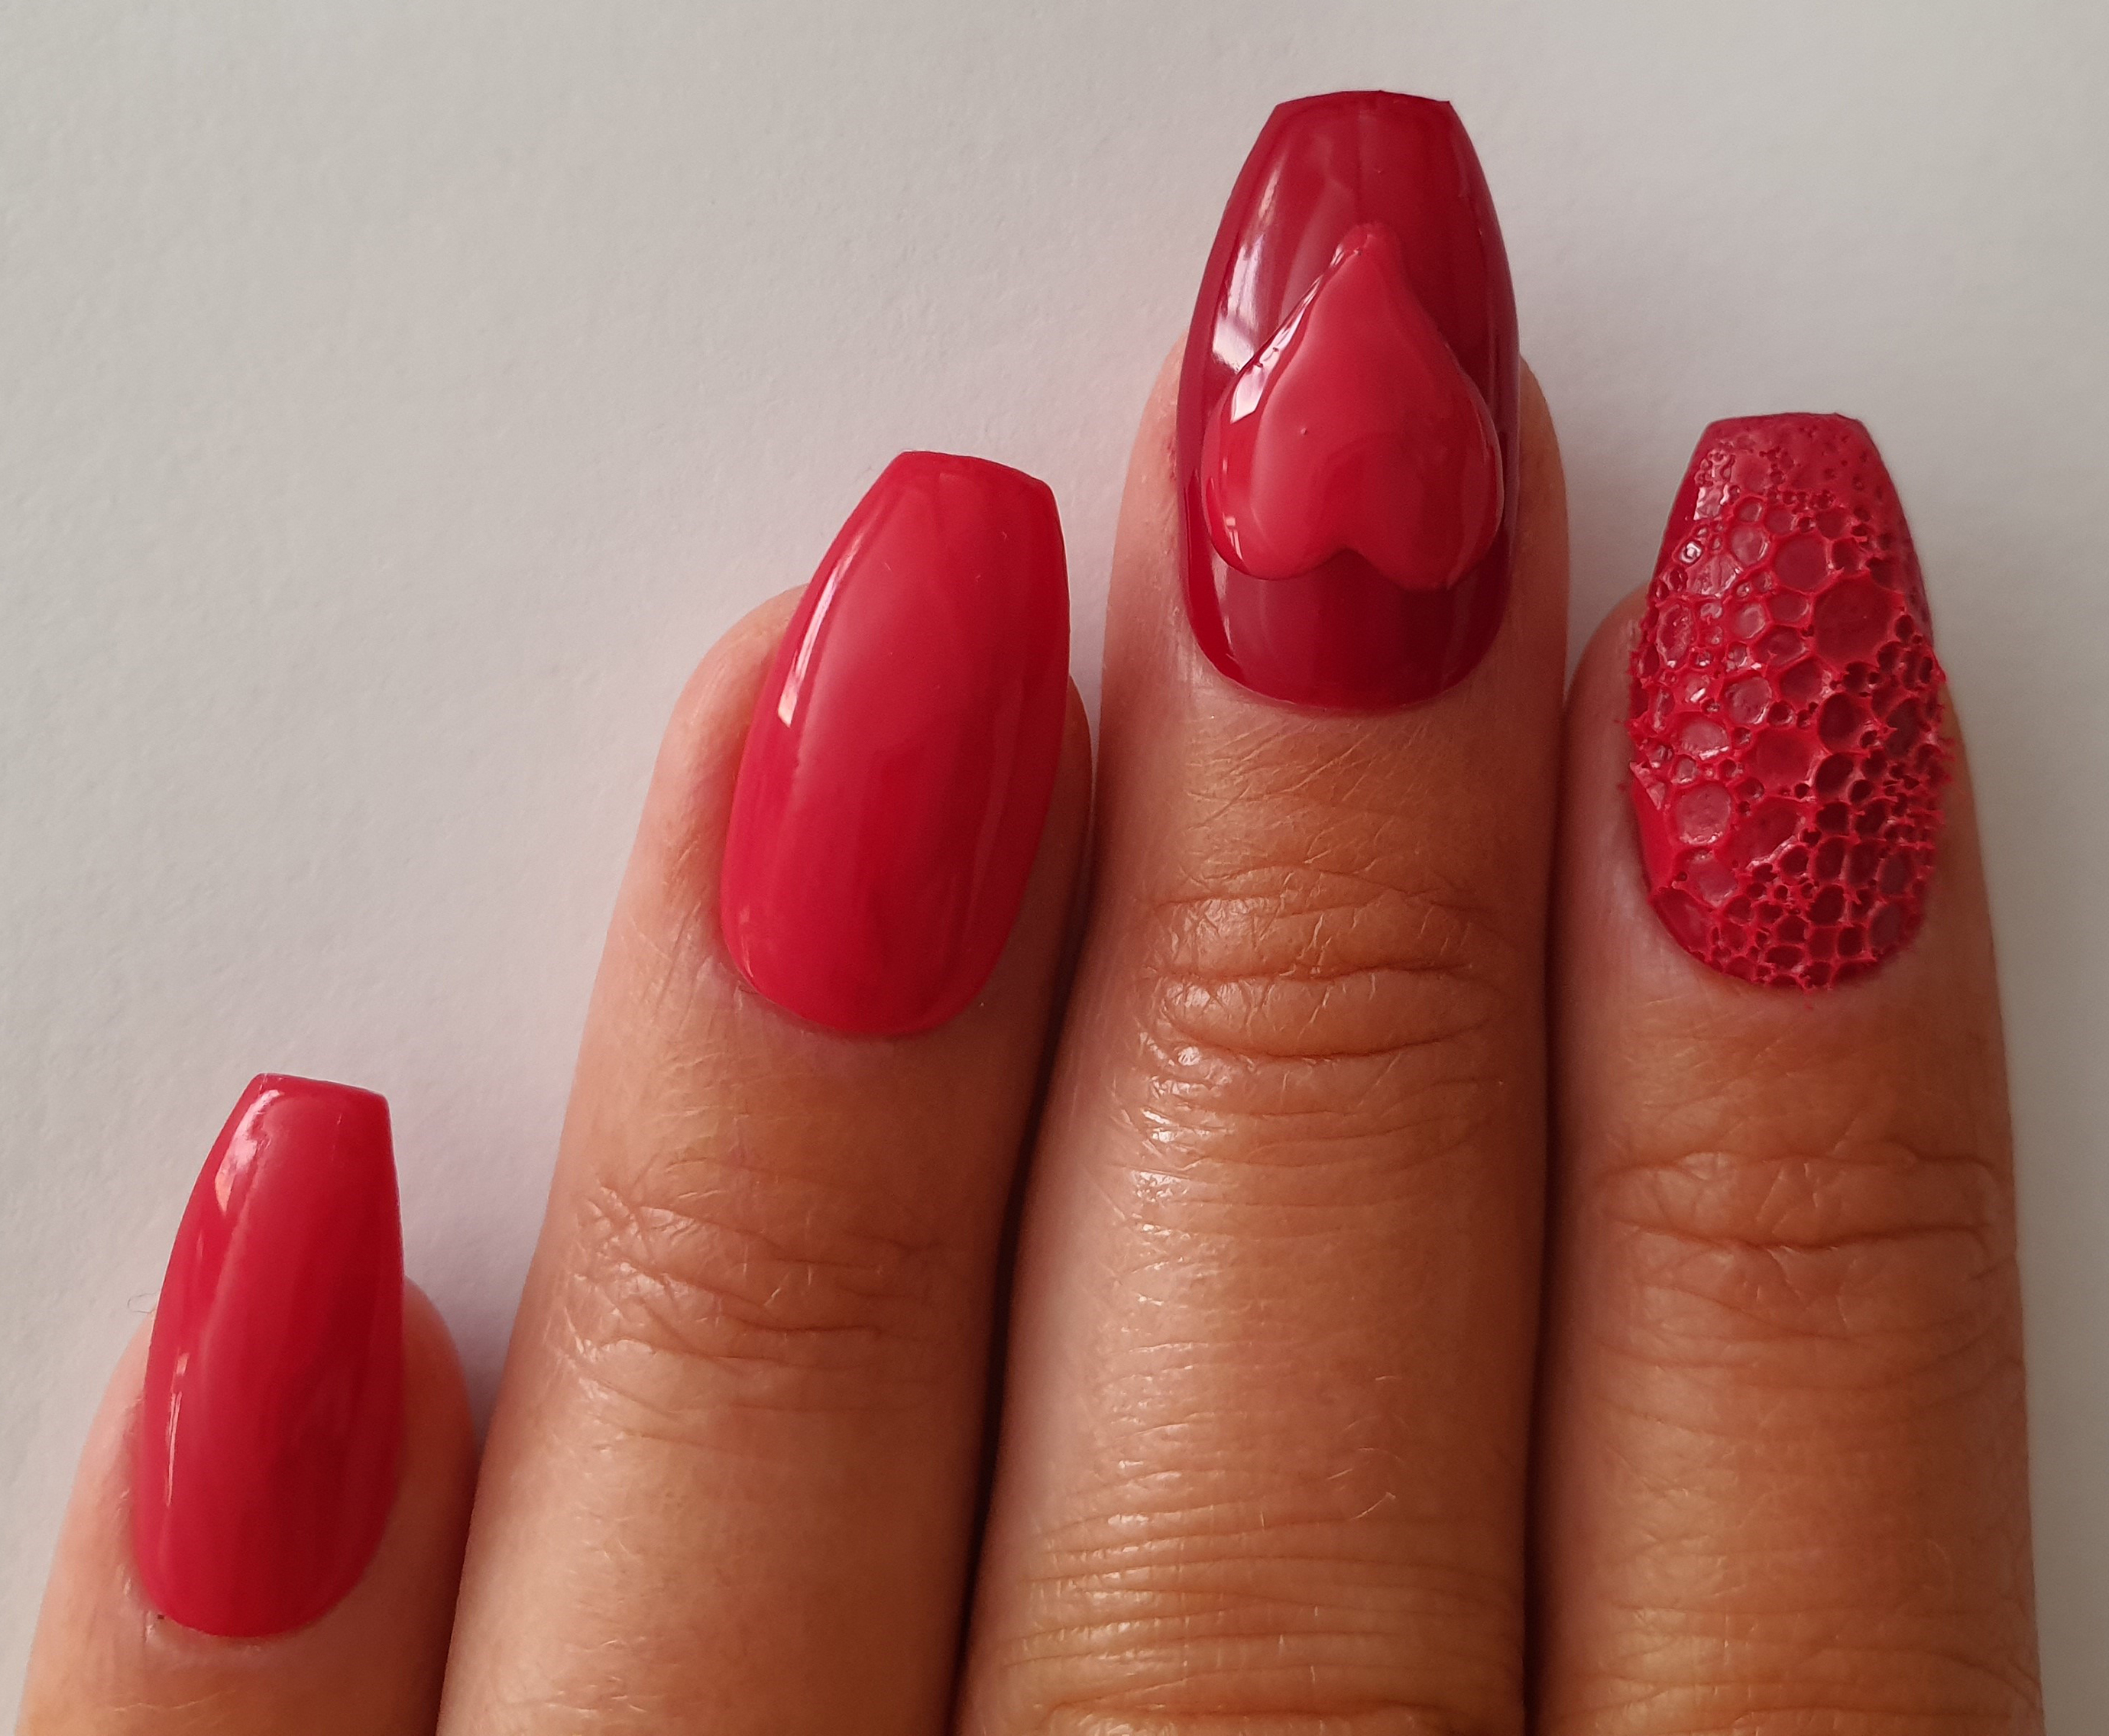 alon System Nail expert Karen Louise's Valentine's-inspired nail art design.